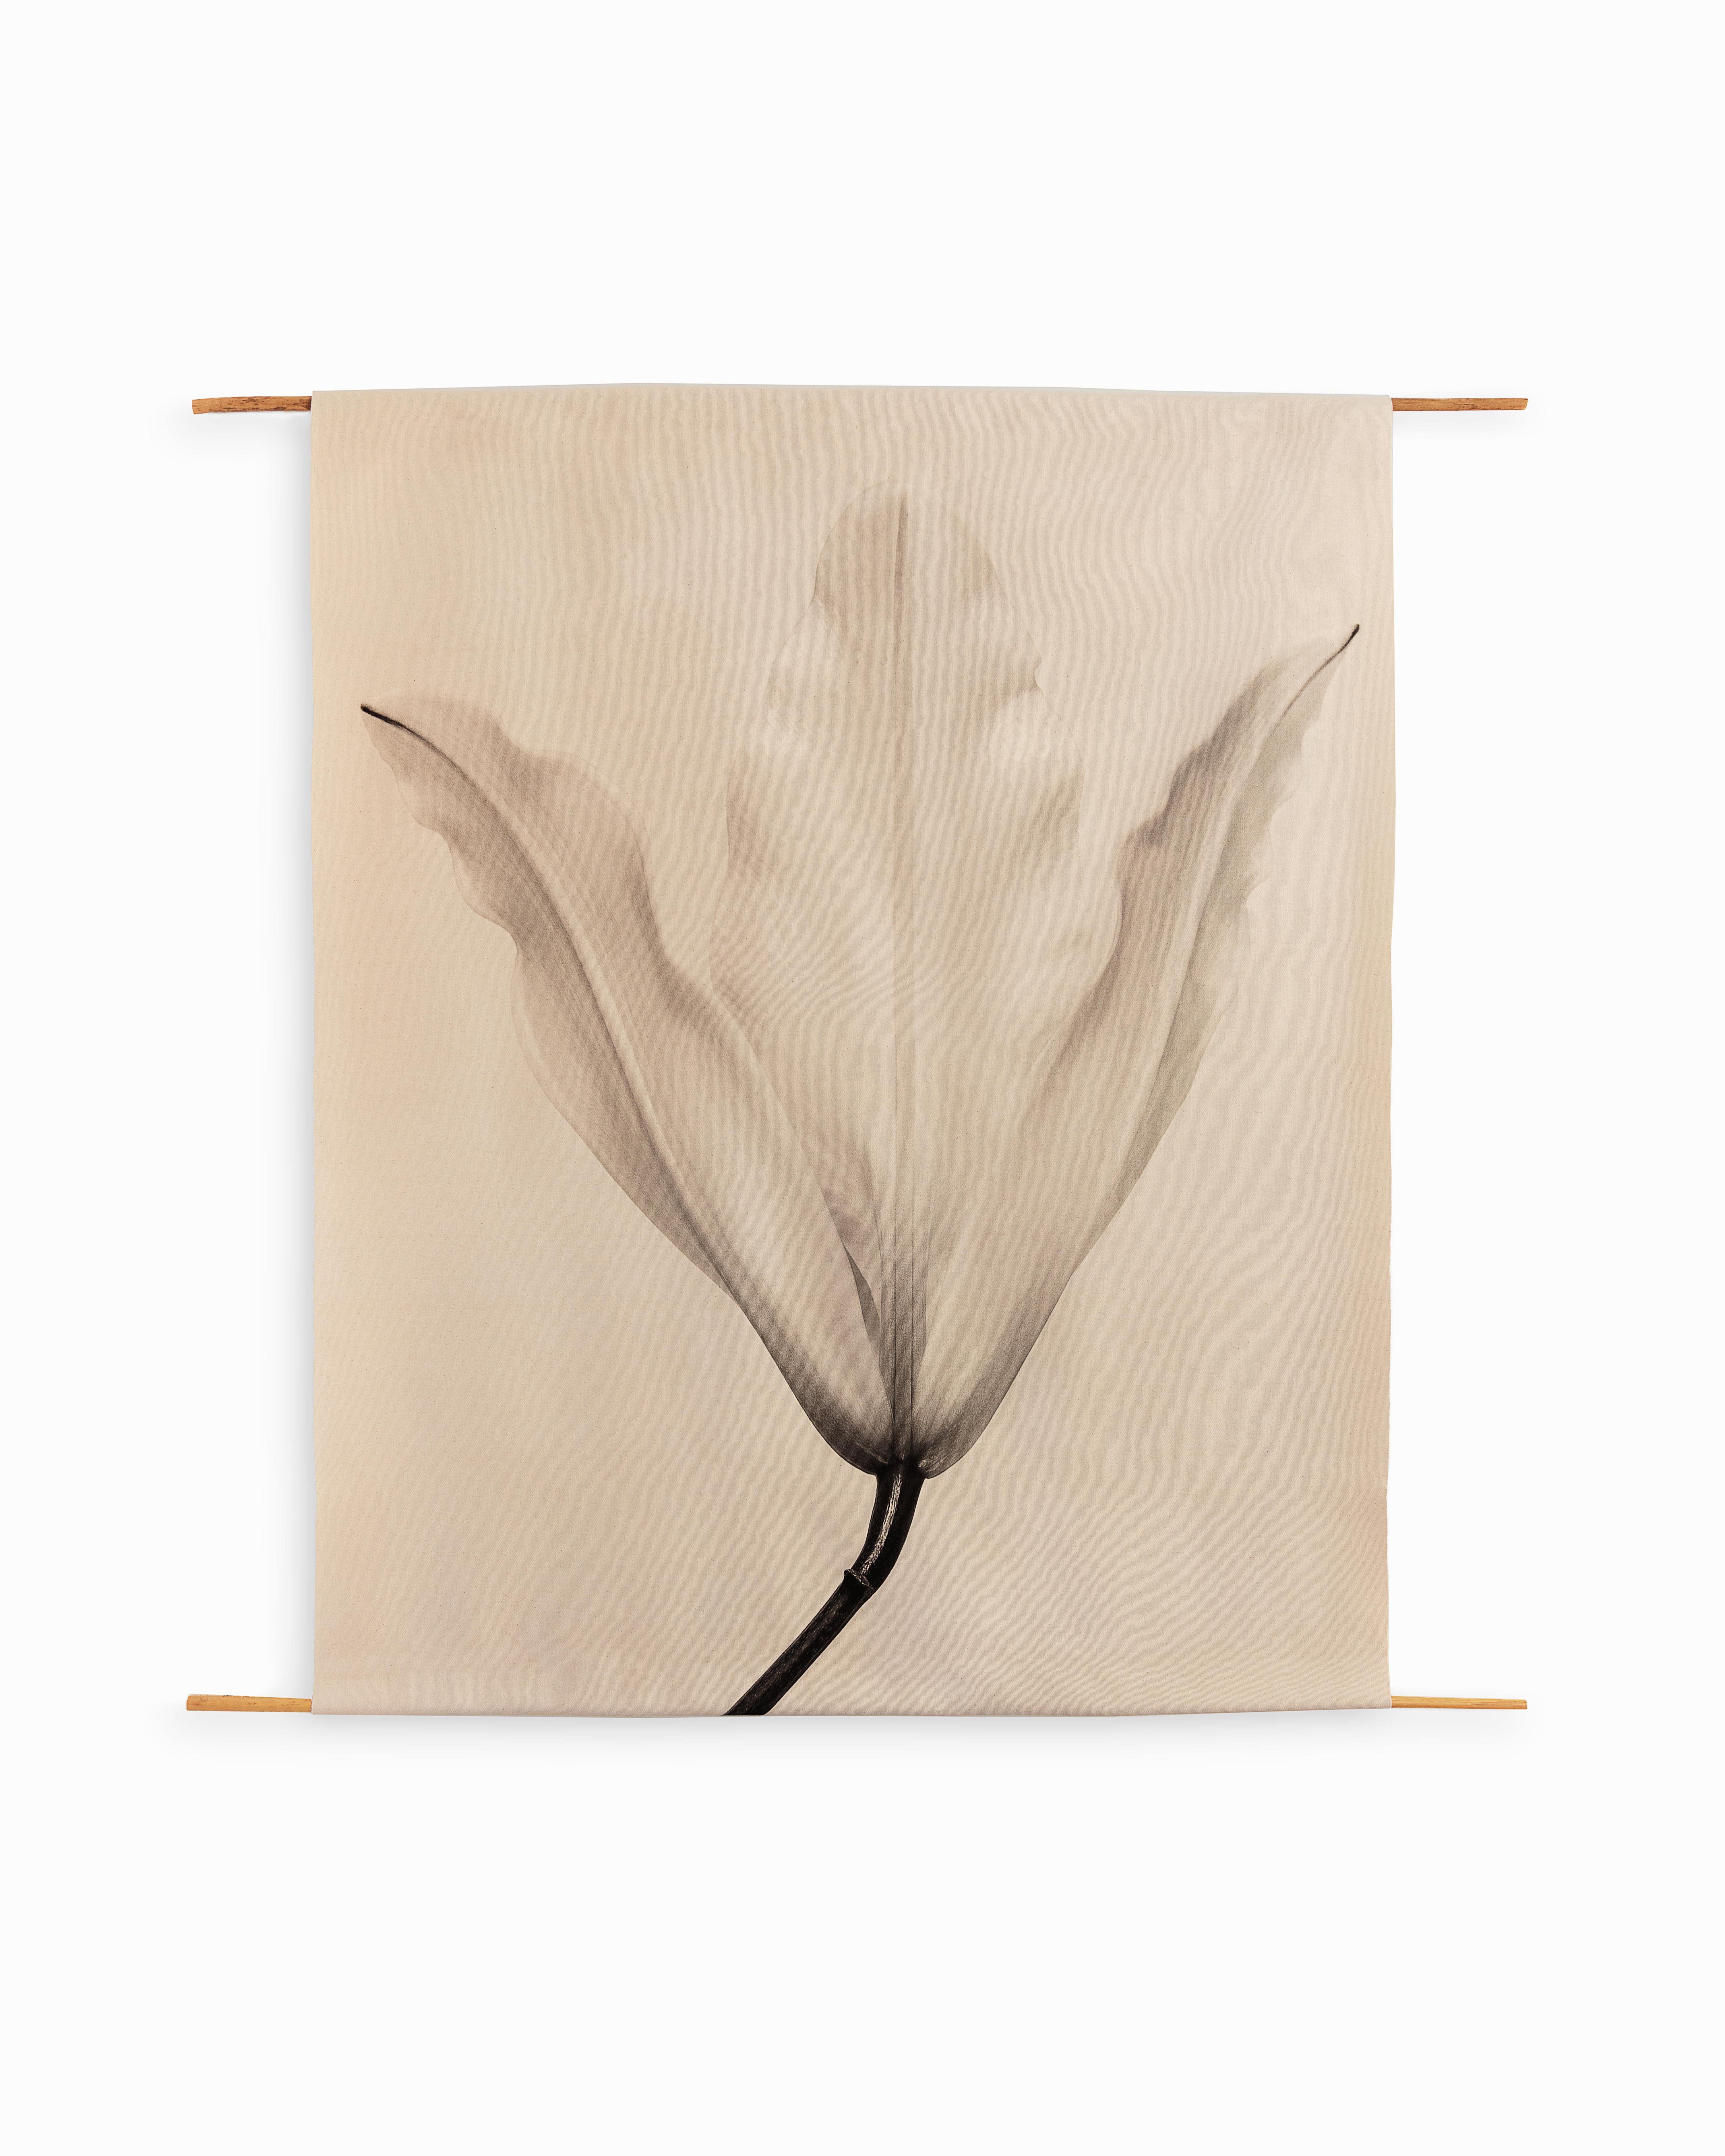 Lily n°3 - volutes de toile de coton organique sur bambou, édition limitée 5